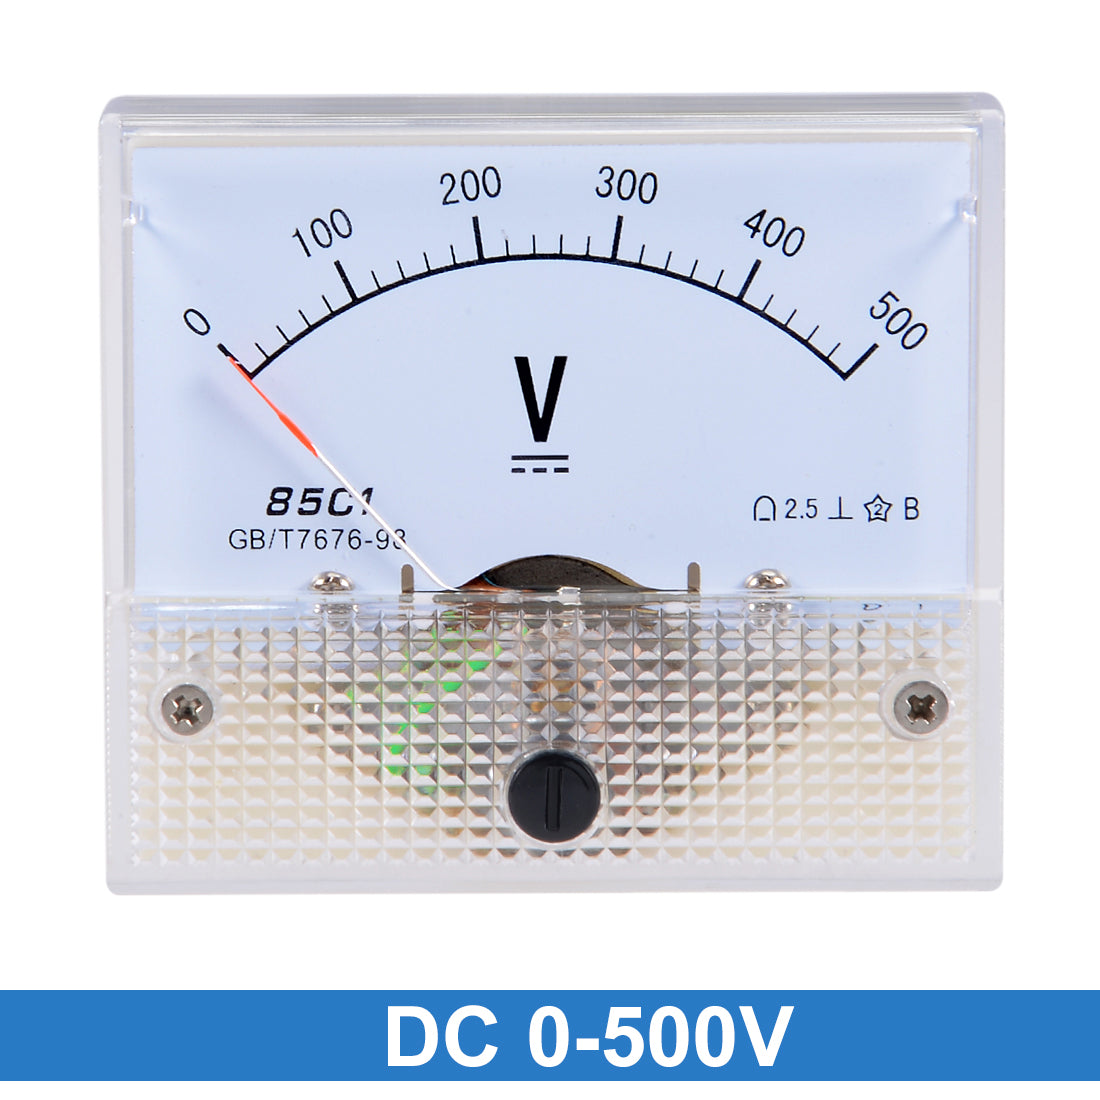 uxcell Uxcell DC 0-500V Analog Panel Voltage Gauge Volt Meter 85C1 2.5% Error Margin